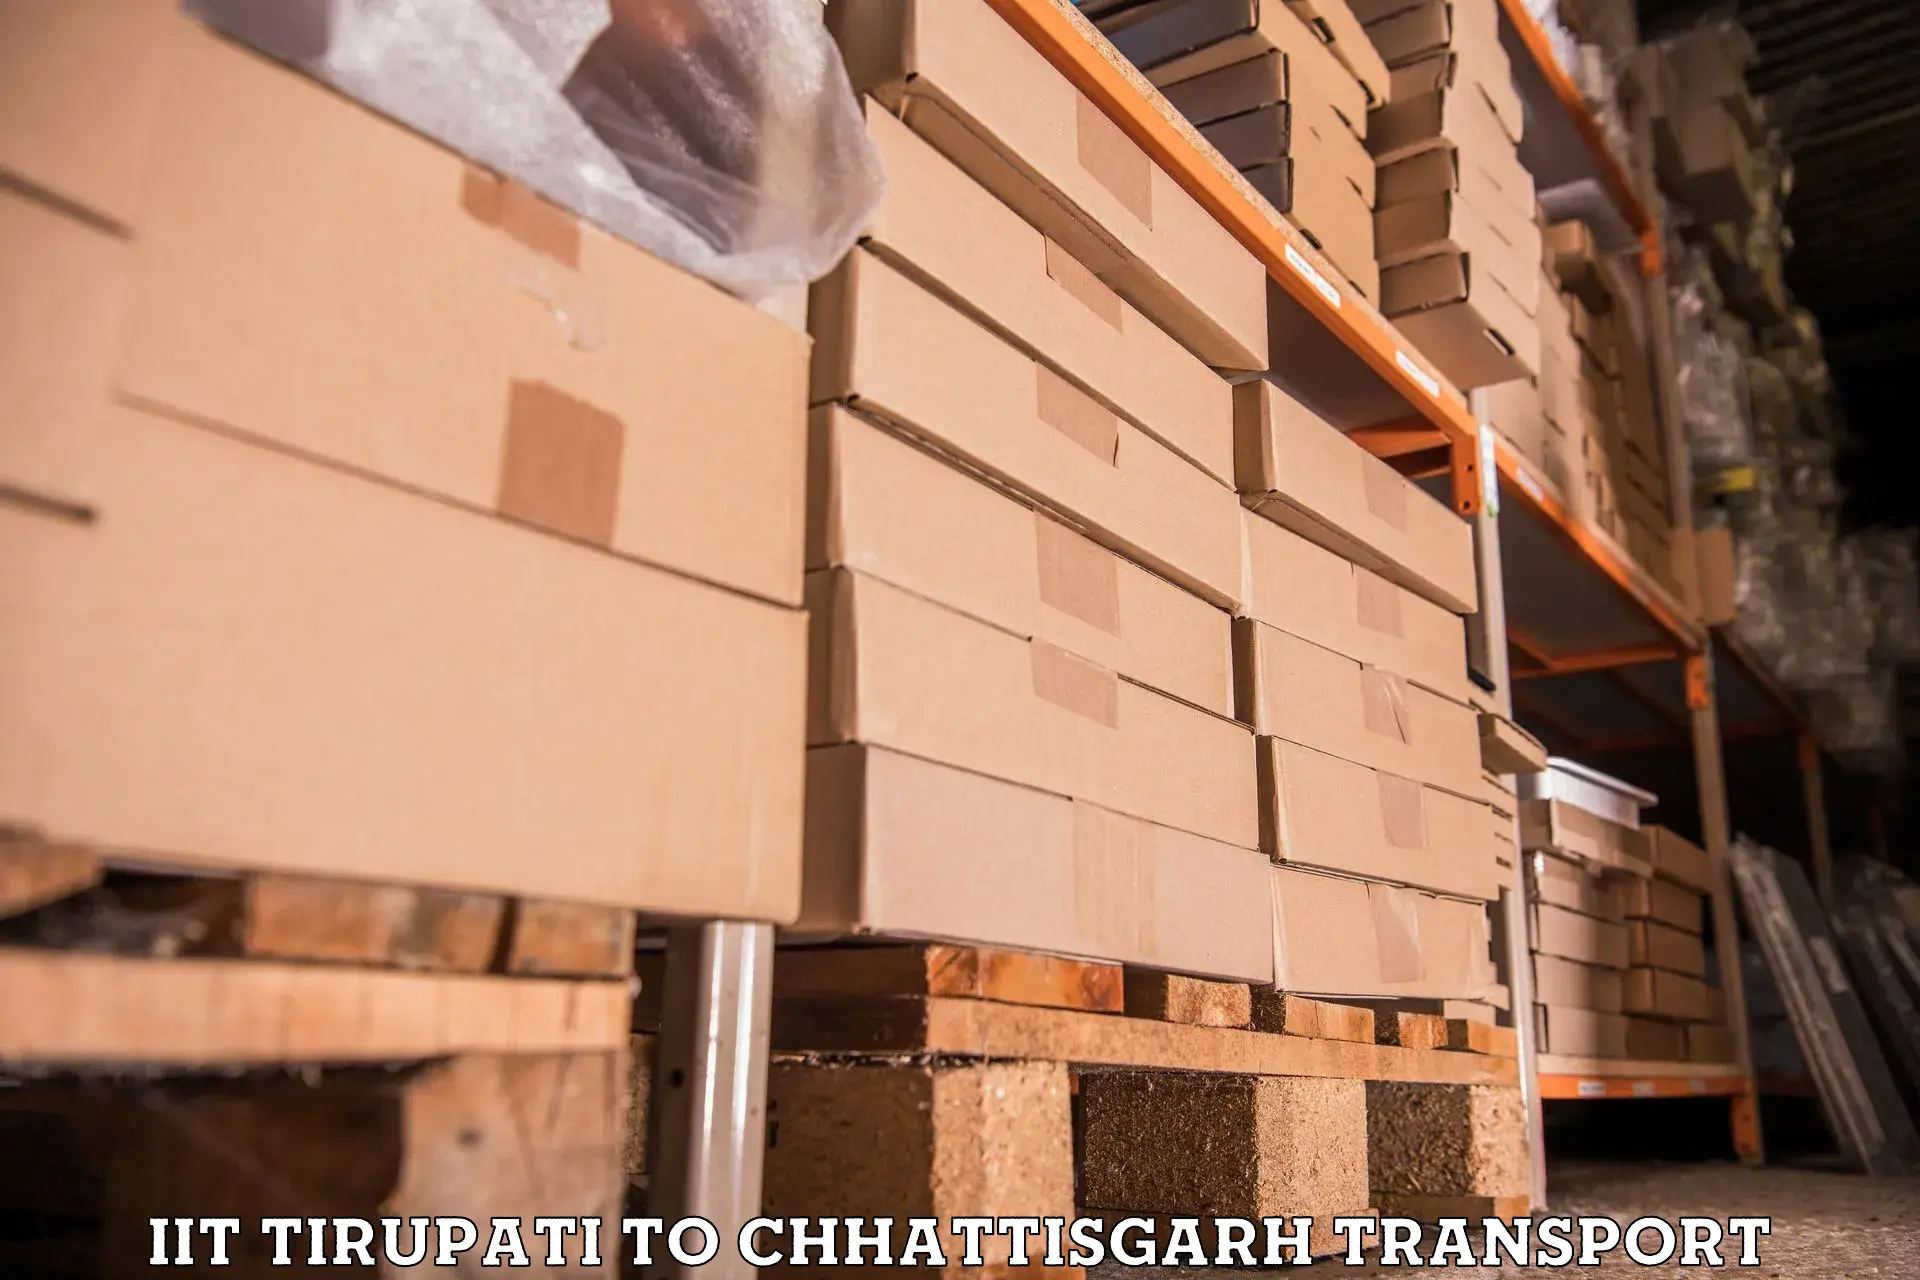 Delivery service IIT Tirupati to Korea Chhattisgarh